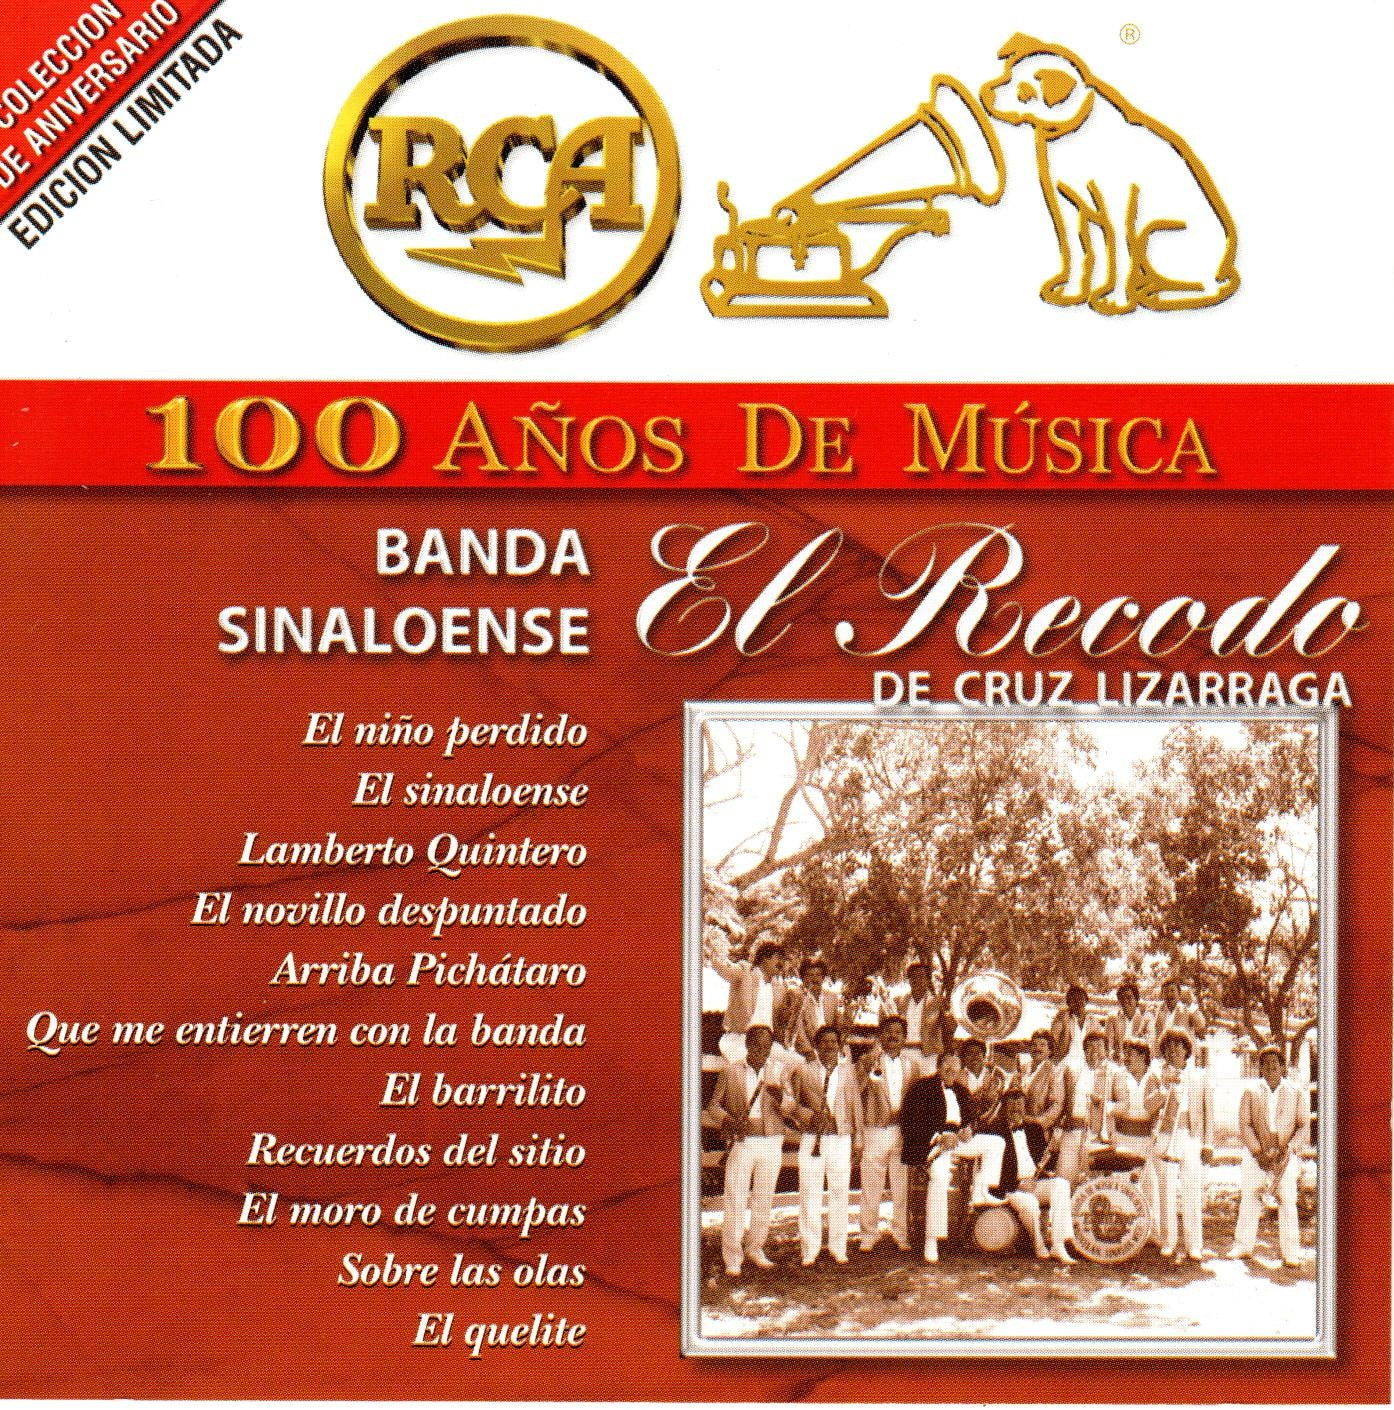 CD x2 RCA 100 AÑOS MUSICA BANDA SINALOENSE El recodo de la cruz lizarraga